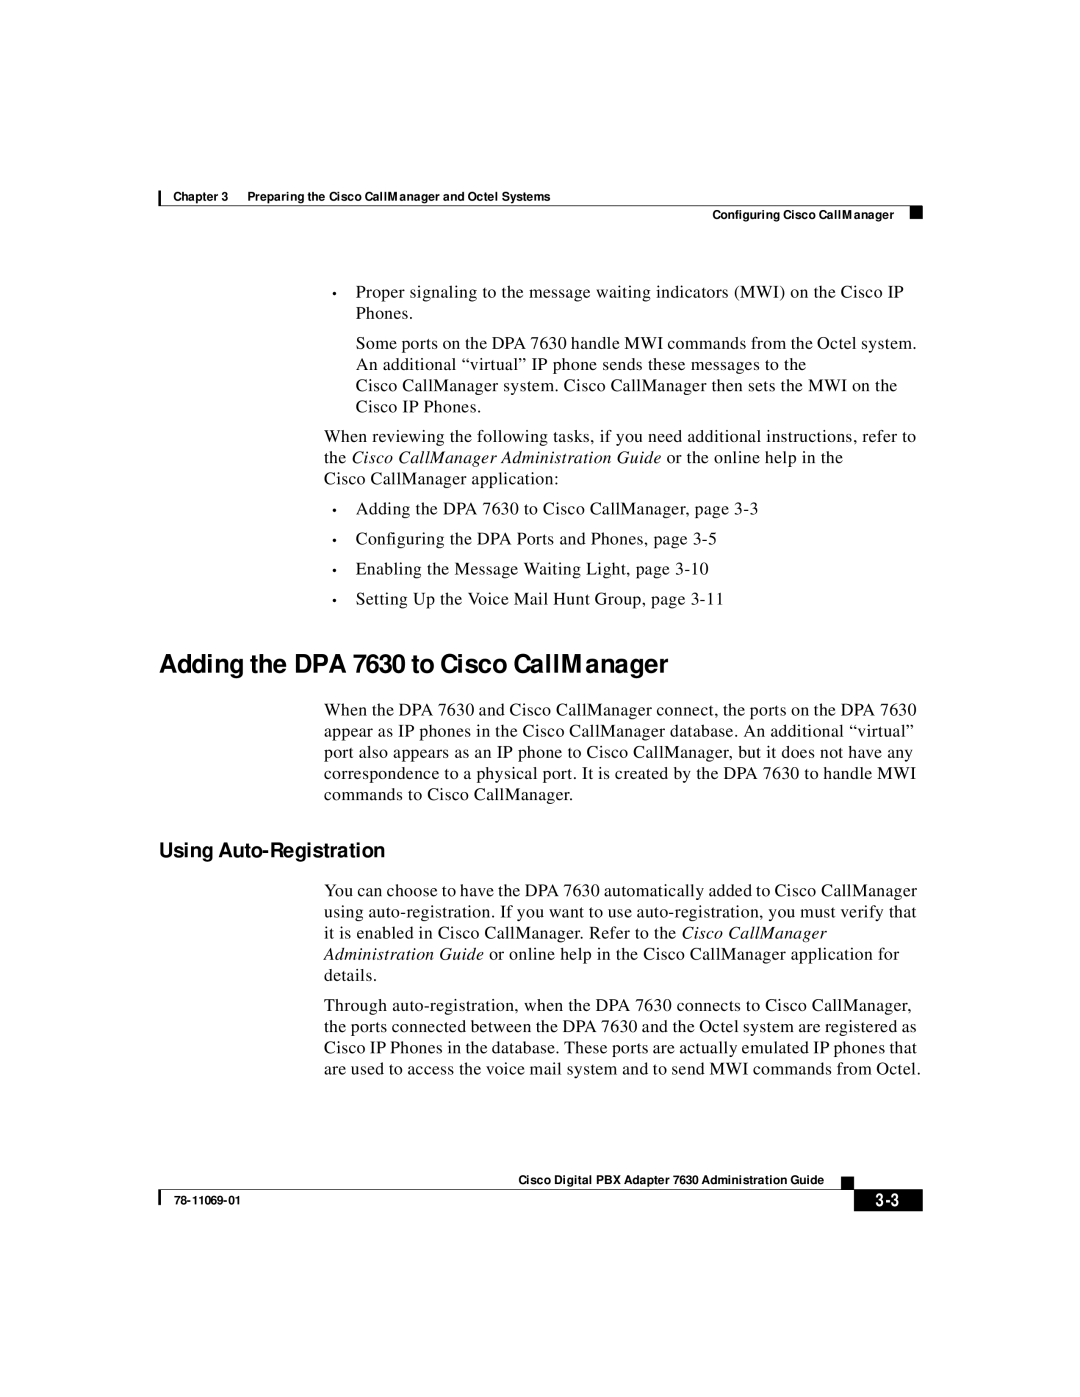 3Com 78-11069-01 manual Adding the DPA 7630 to Cisco CallManager, Using Auto-Registration 